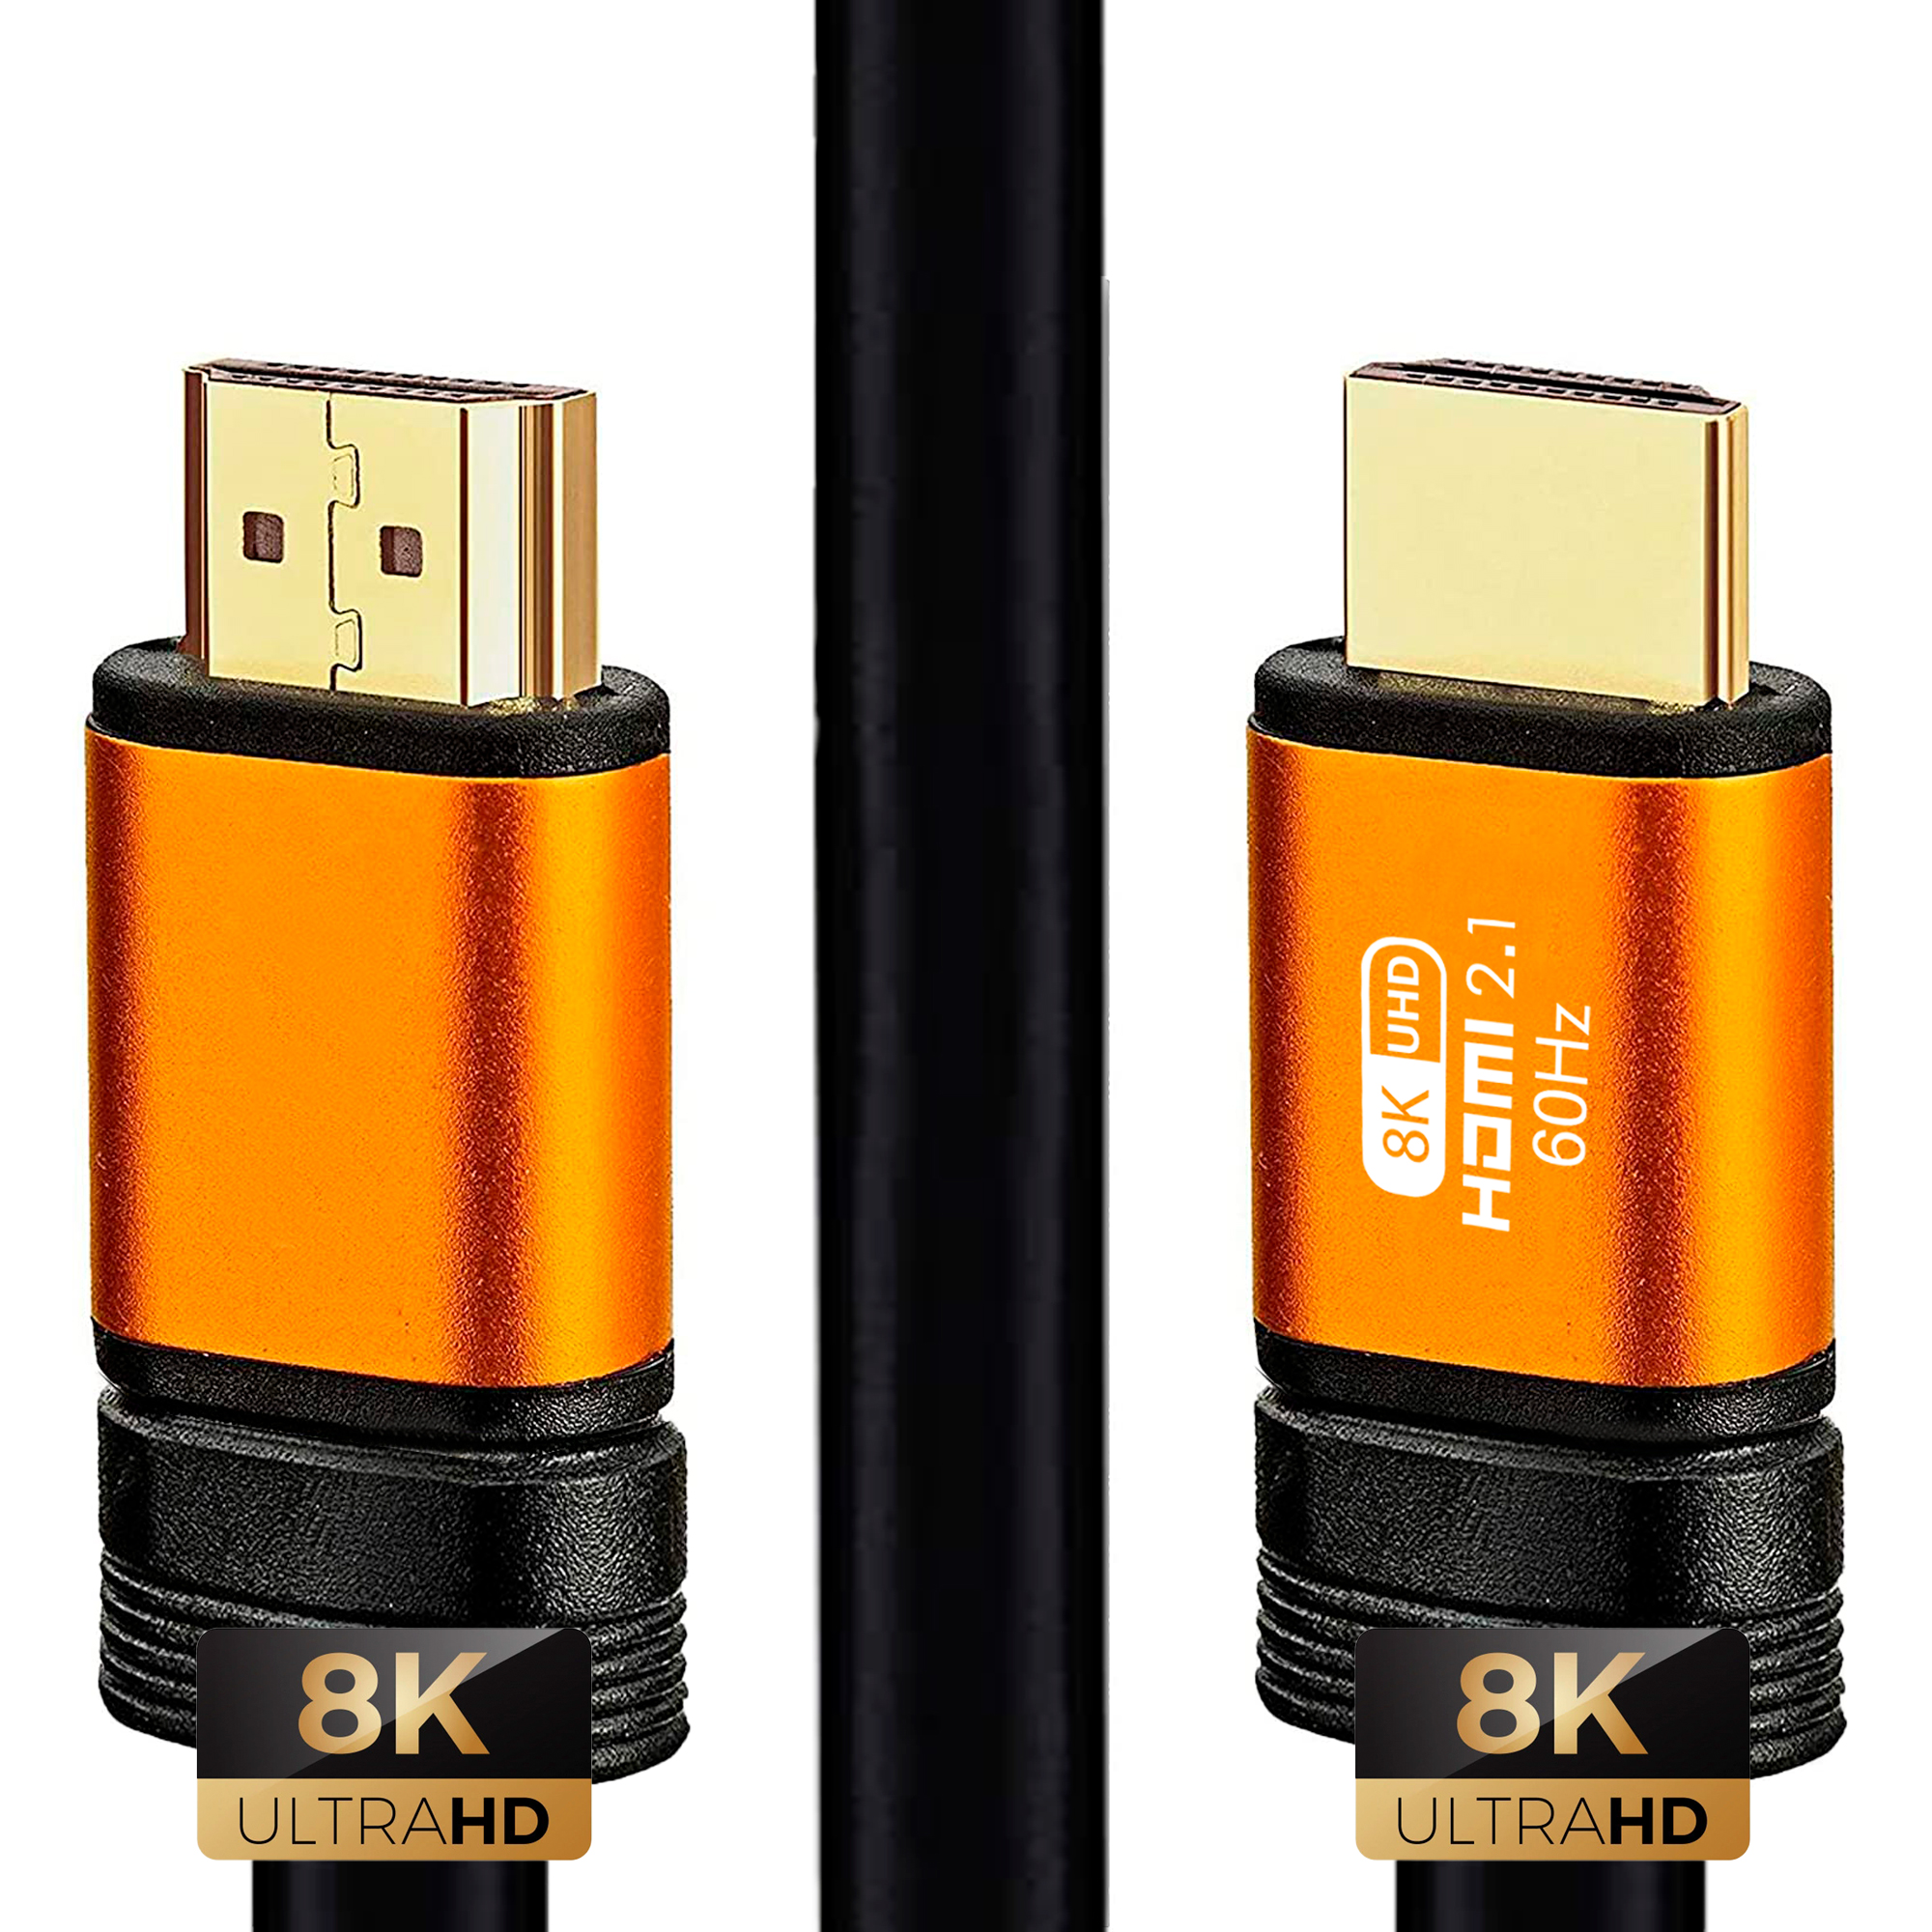 gravedad miércoles Sherlock Holmes Cable HDMI 2.1 de 4 metros 8K 48Gbps > Cables y accesorios > Cables HDMI